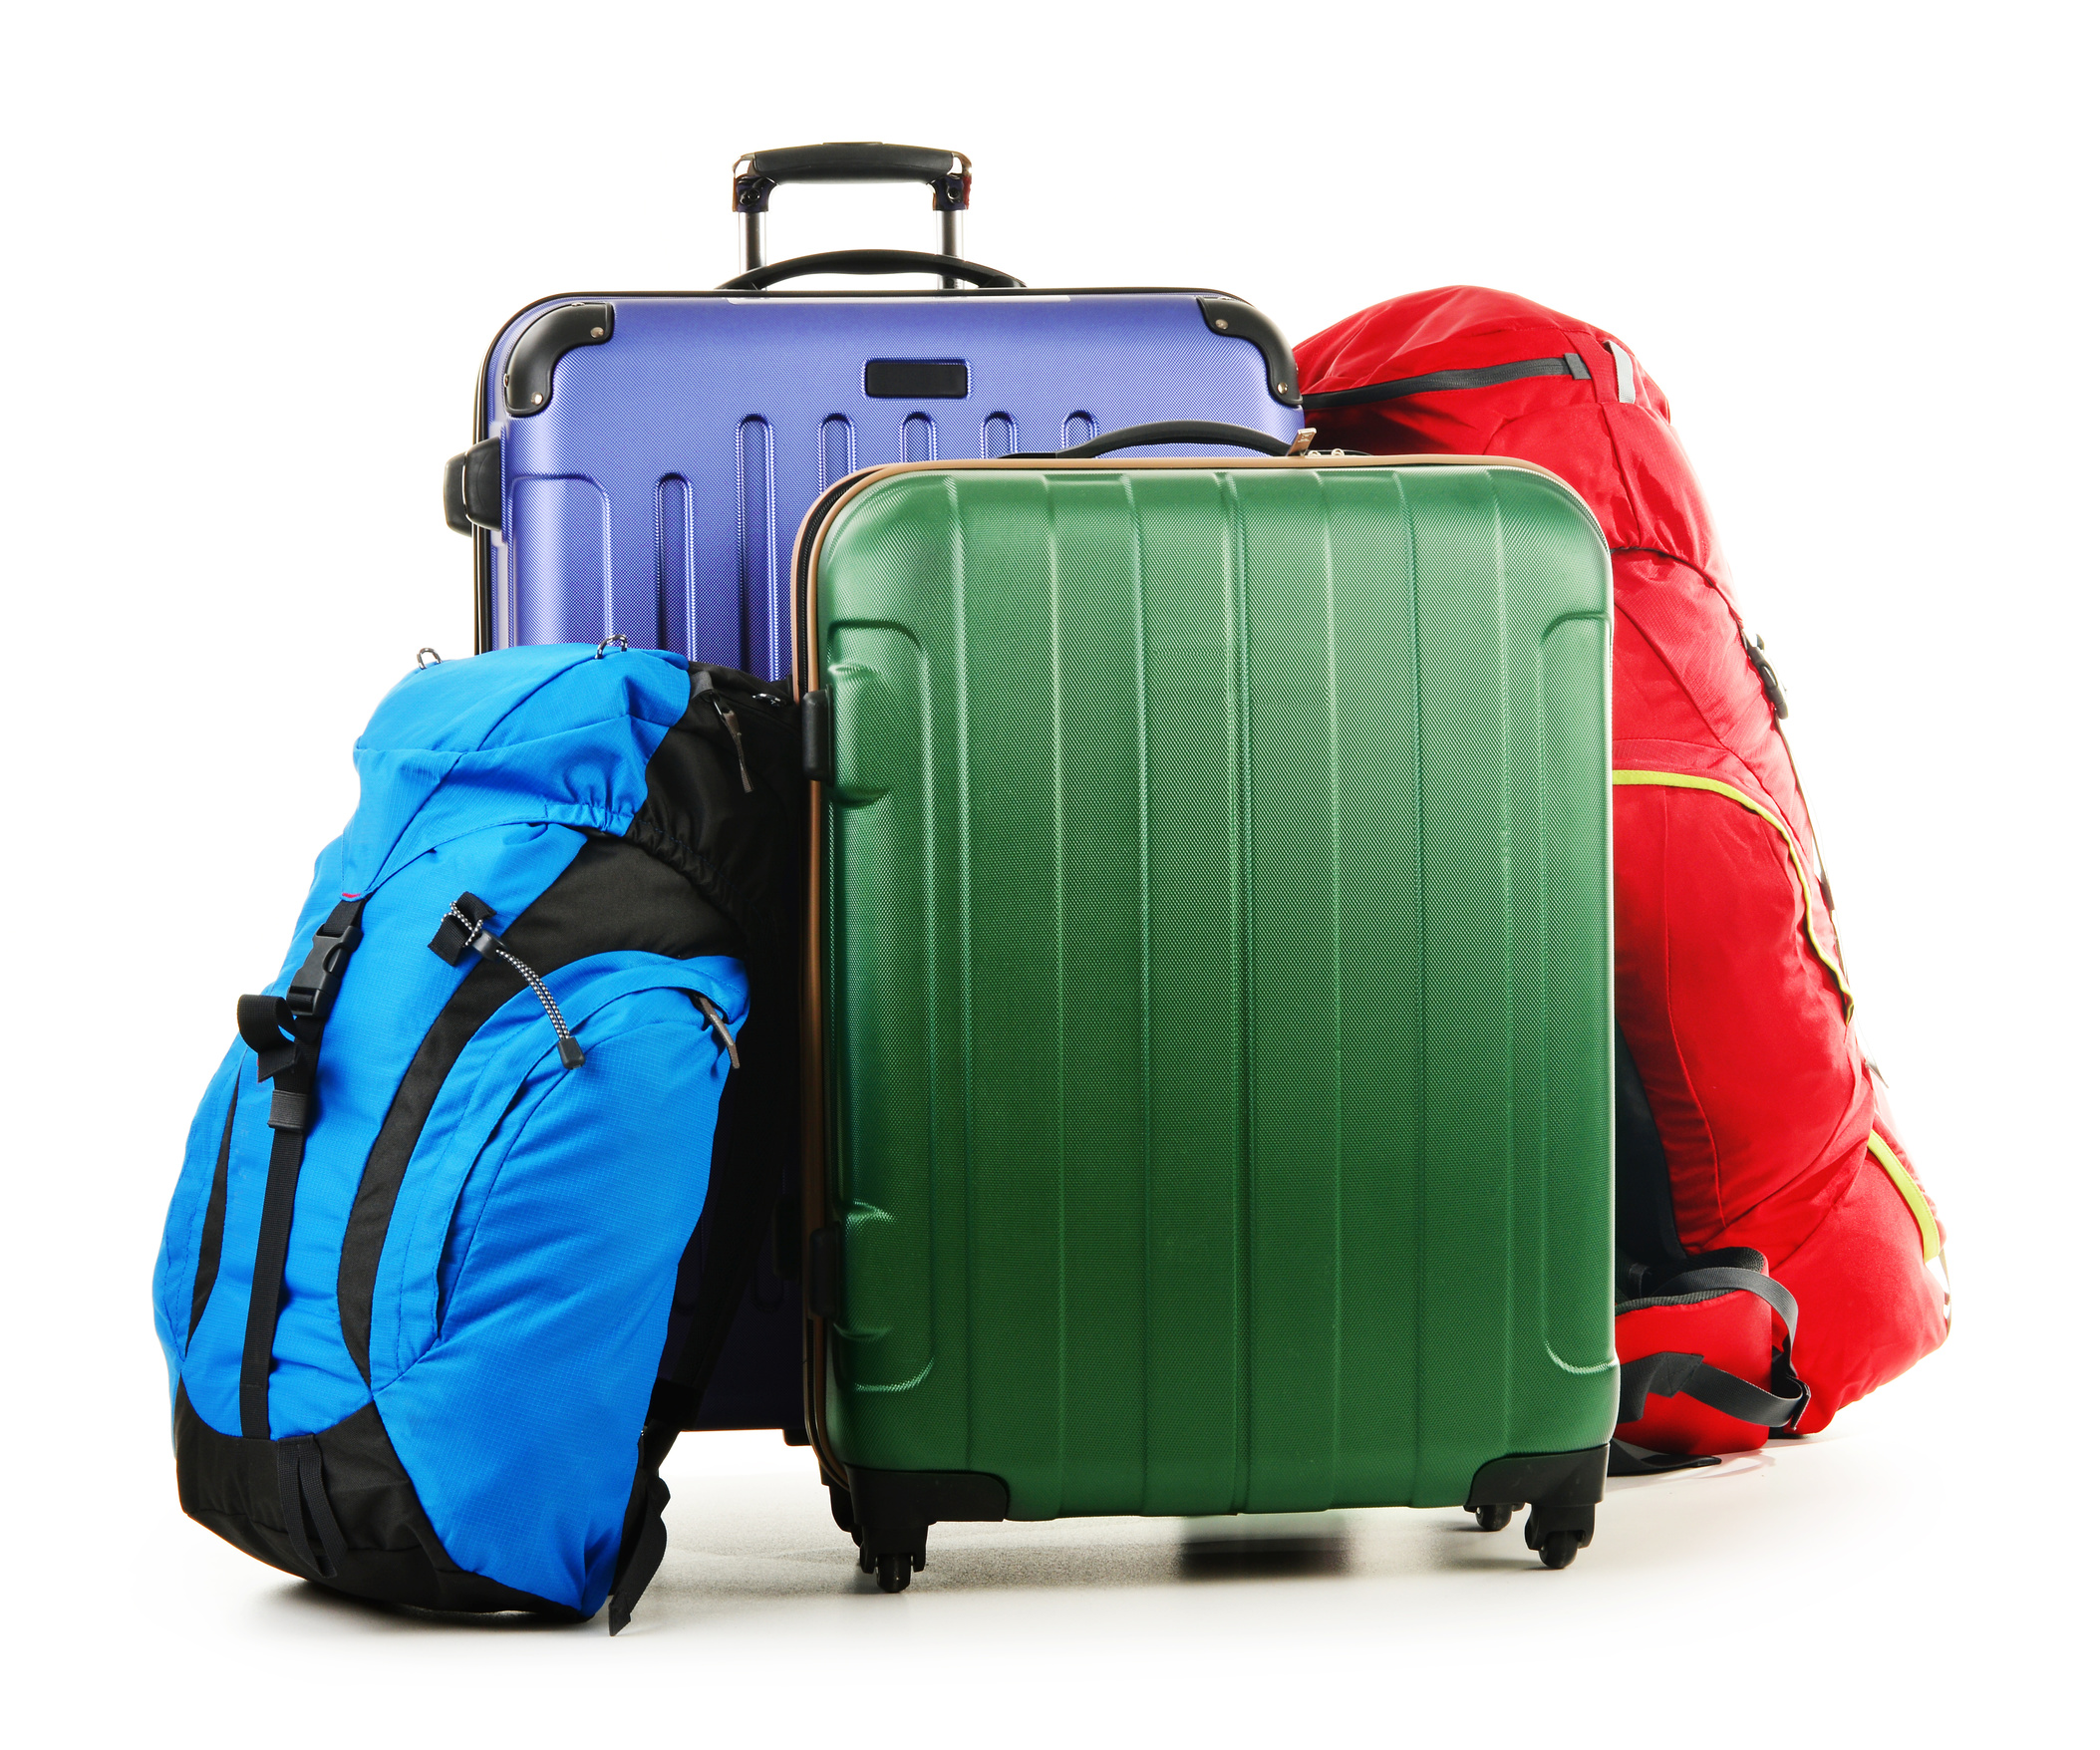 Mang quá nhiều hành lý và vật dụng sẽ làm tăng lượng khí thải carbon. (Ảnh: Fotolia)